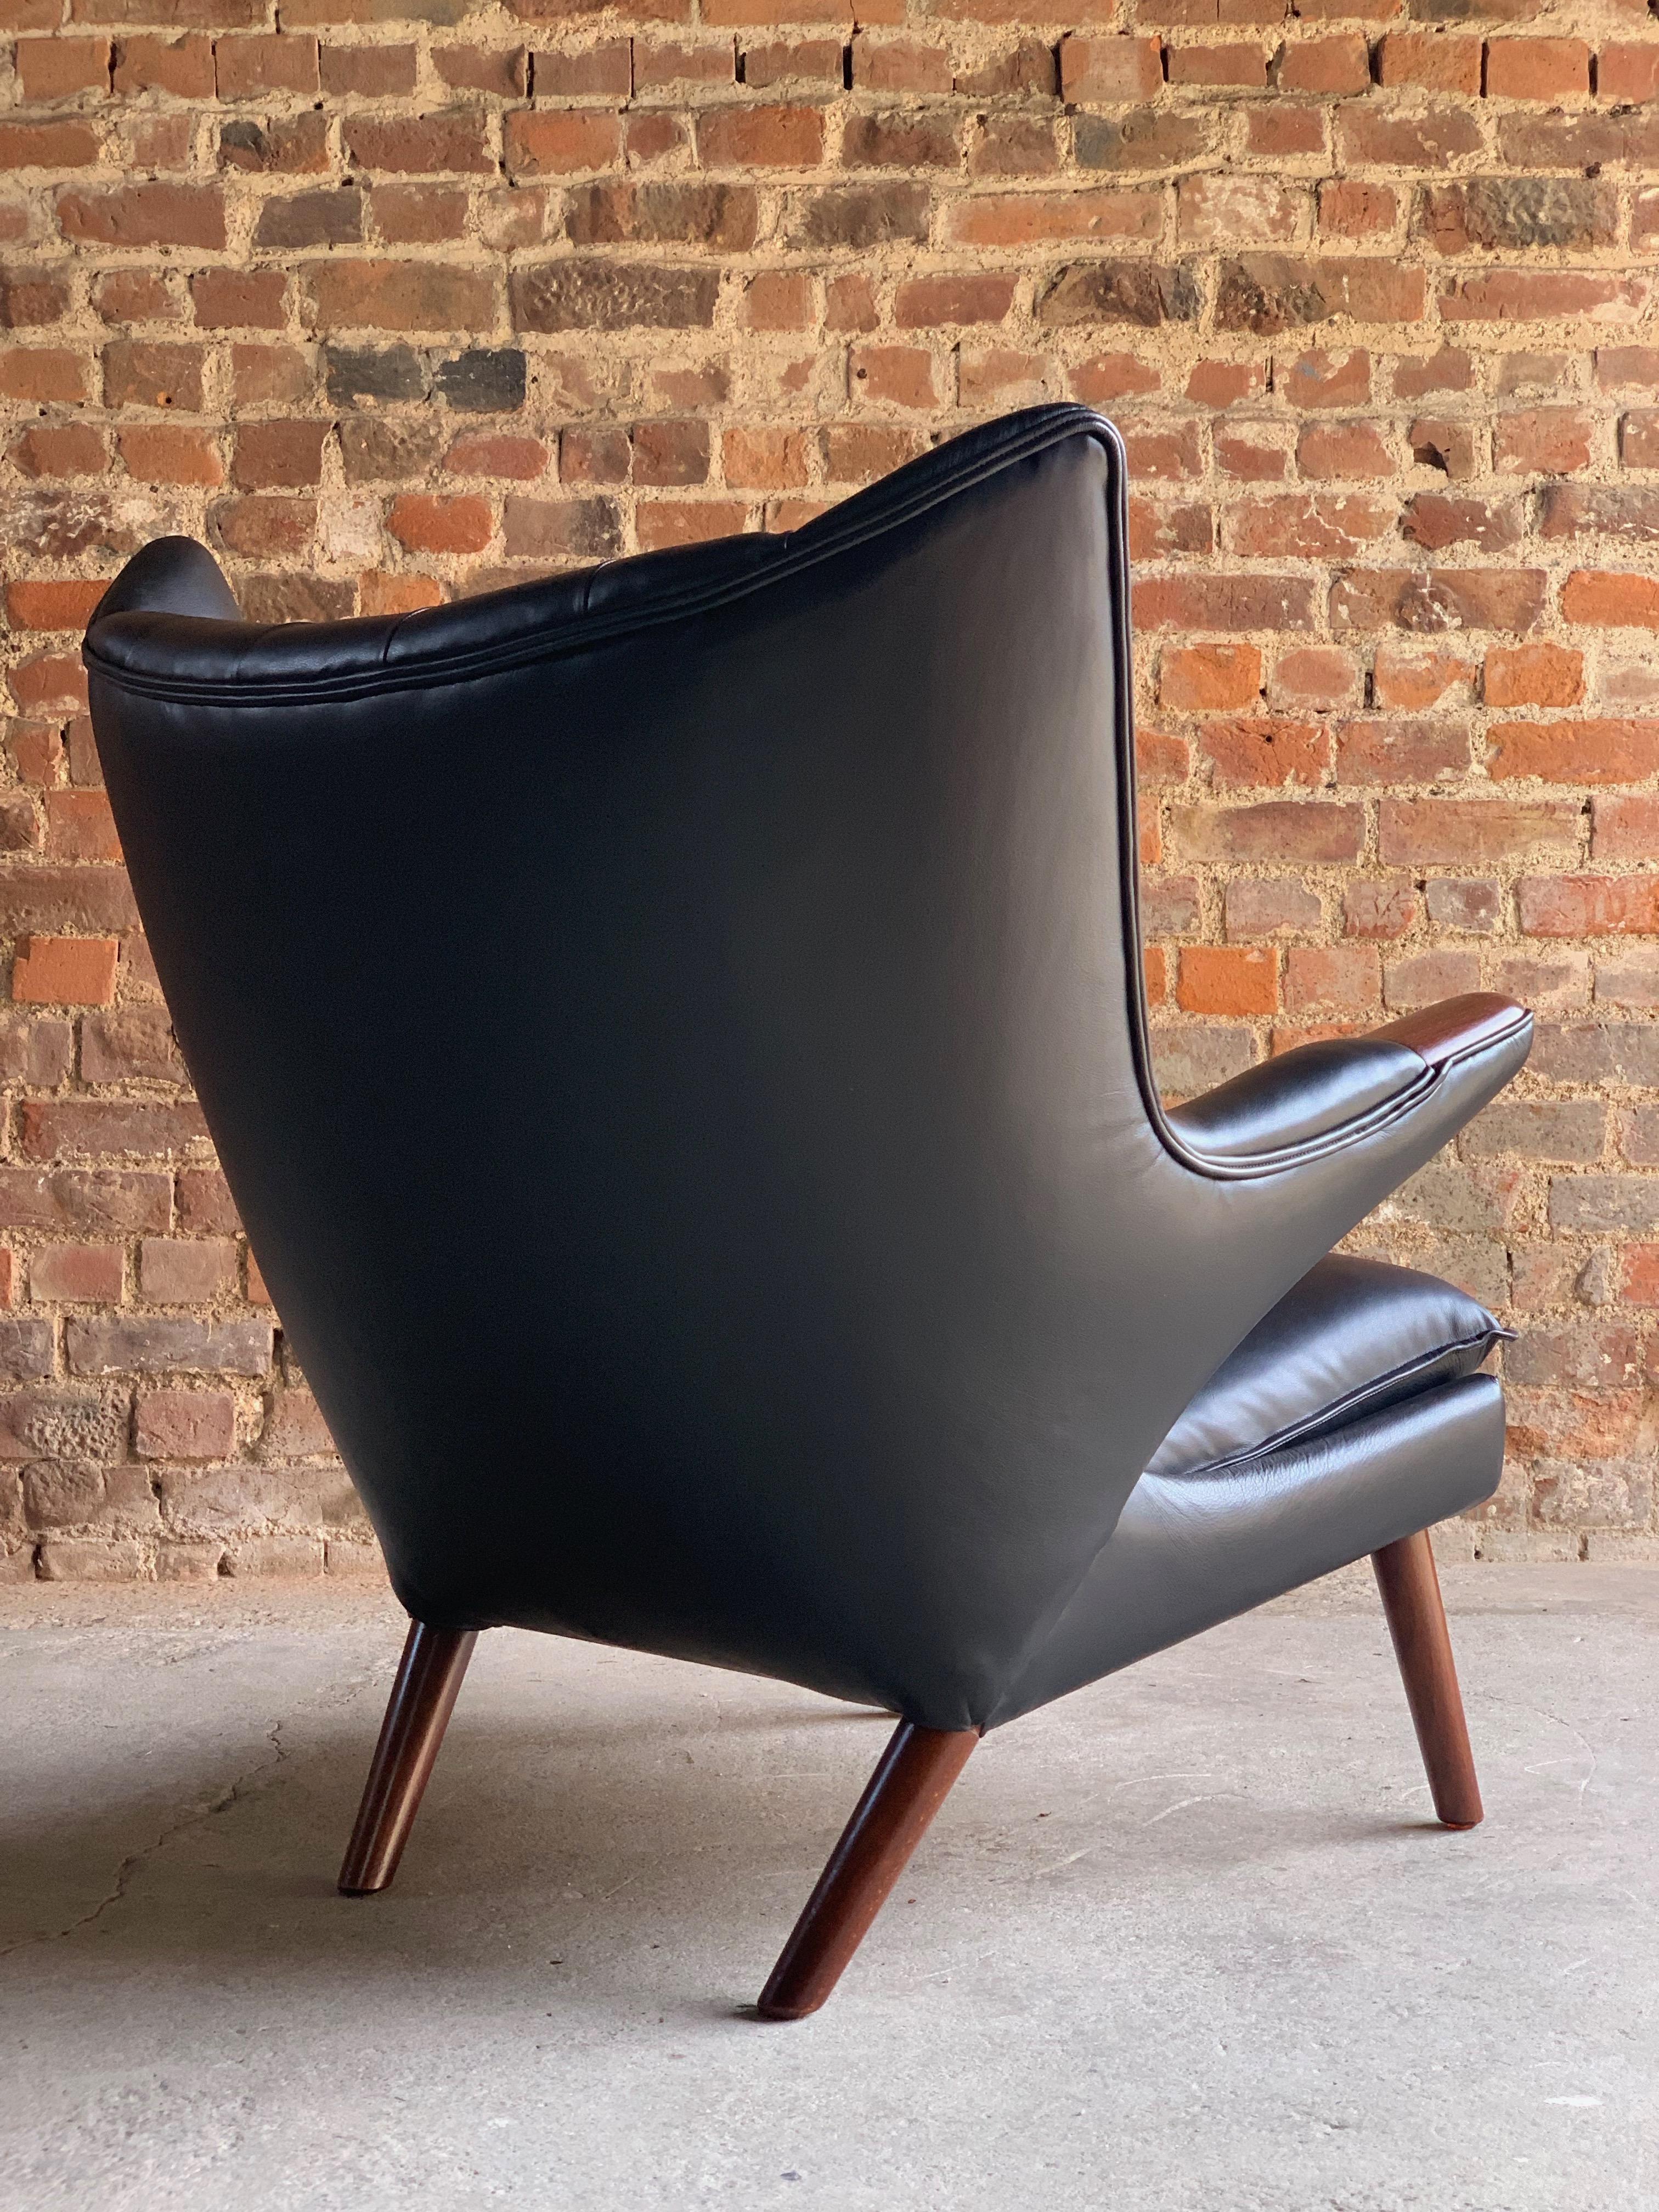 Danish Hans Wegner Papa Bear Lounge Chair Black Leather Model AP19 Denmark, 1963